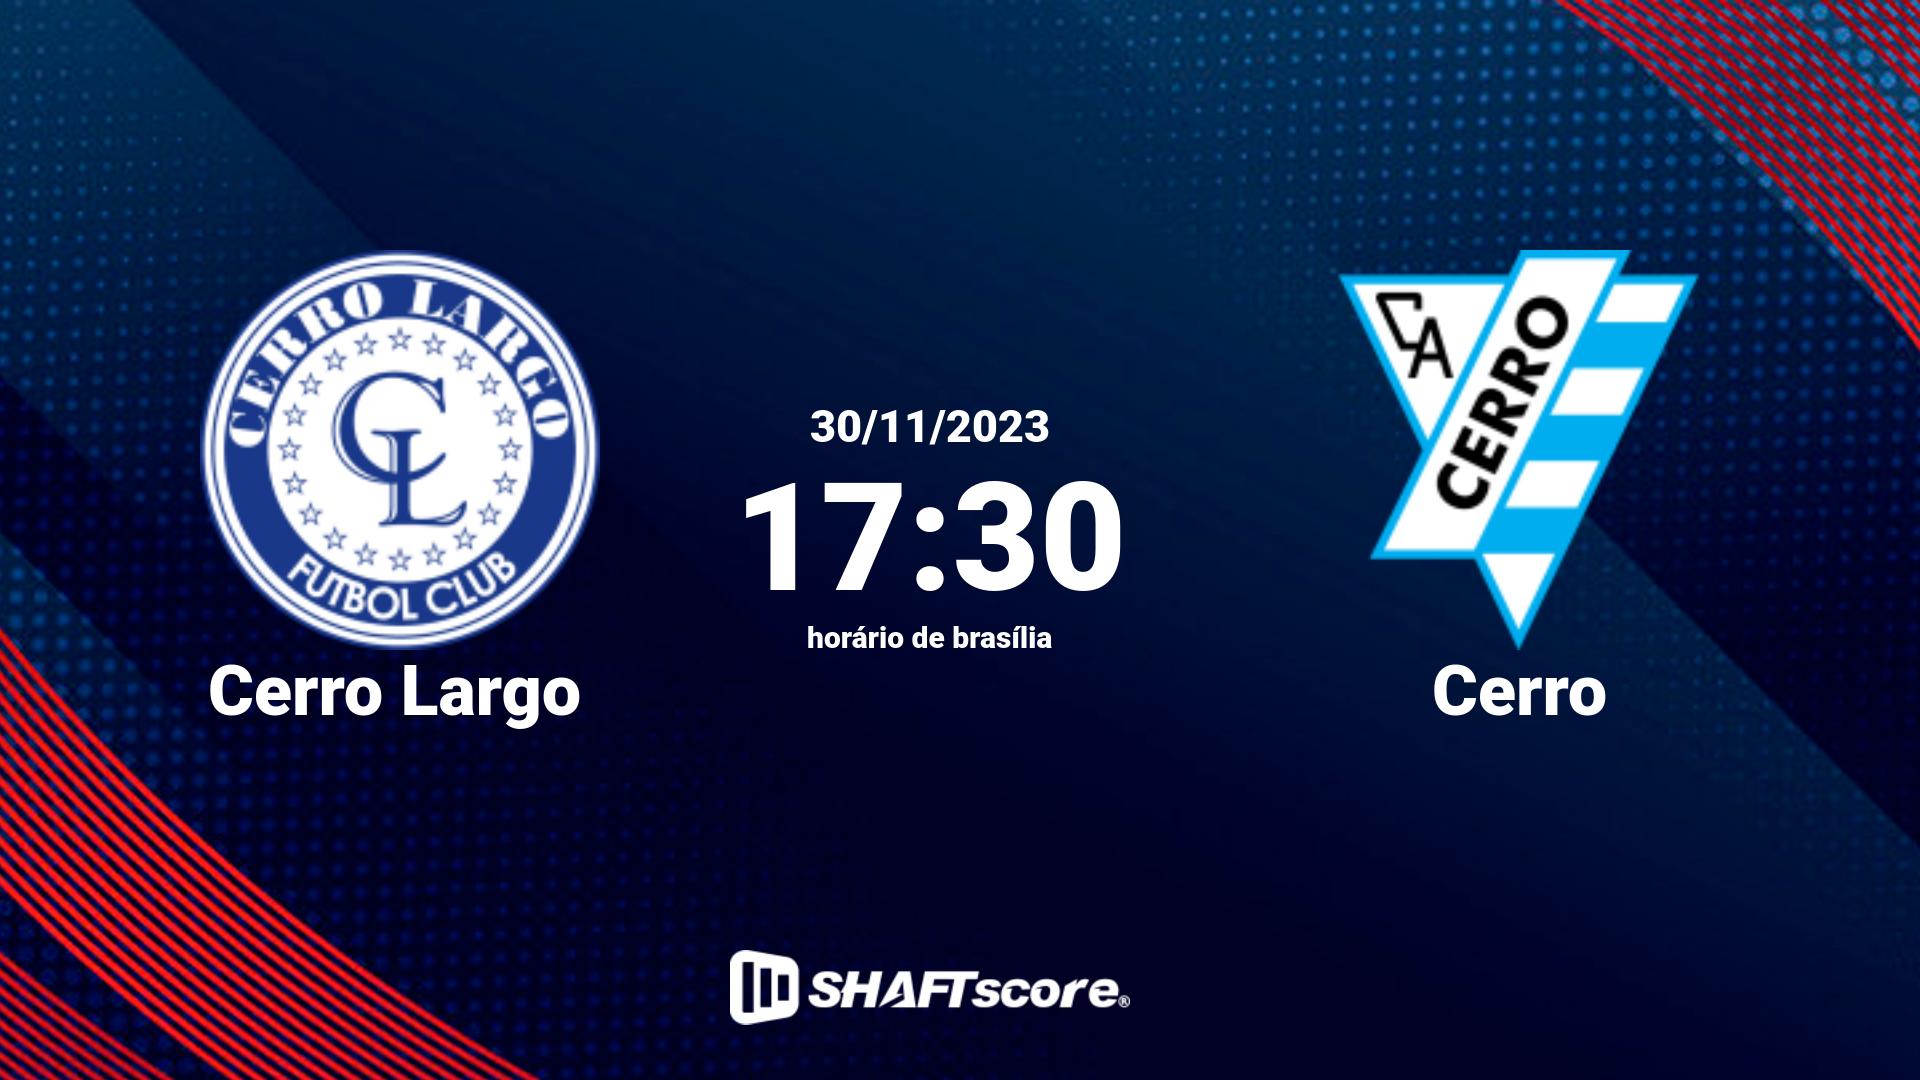 Estatísticas do jogo Cerro Largo vs Cerro 30.11 17:30